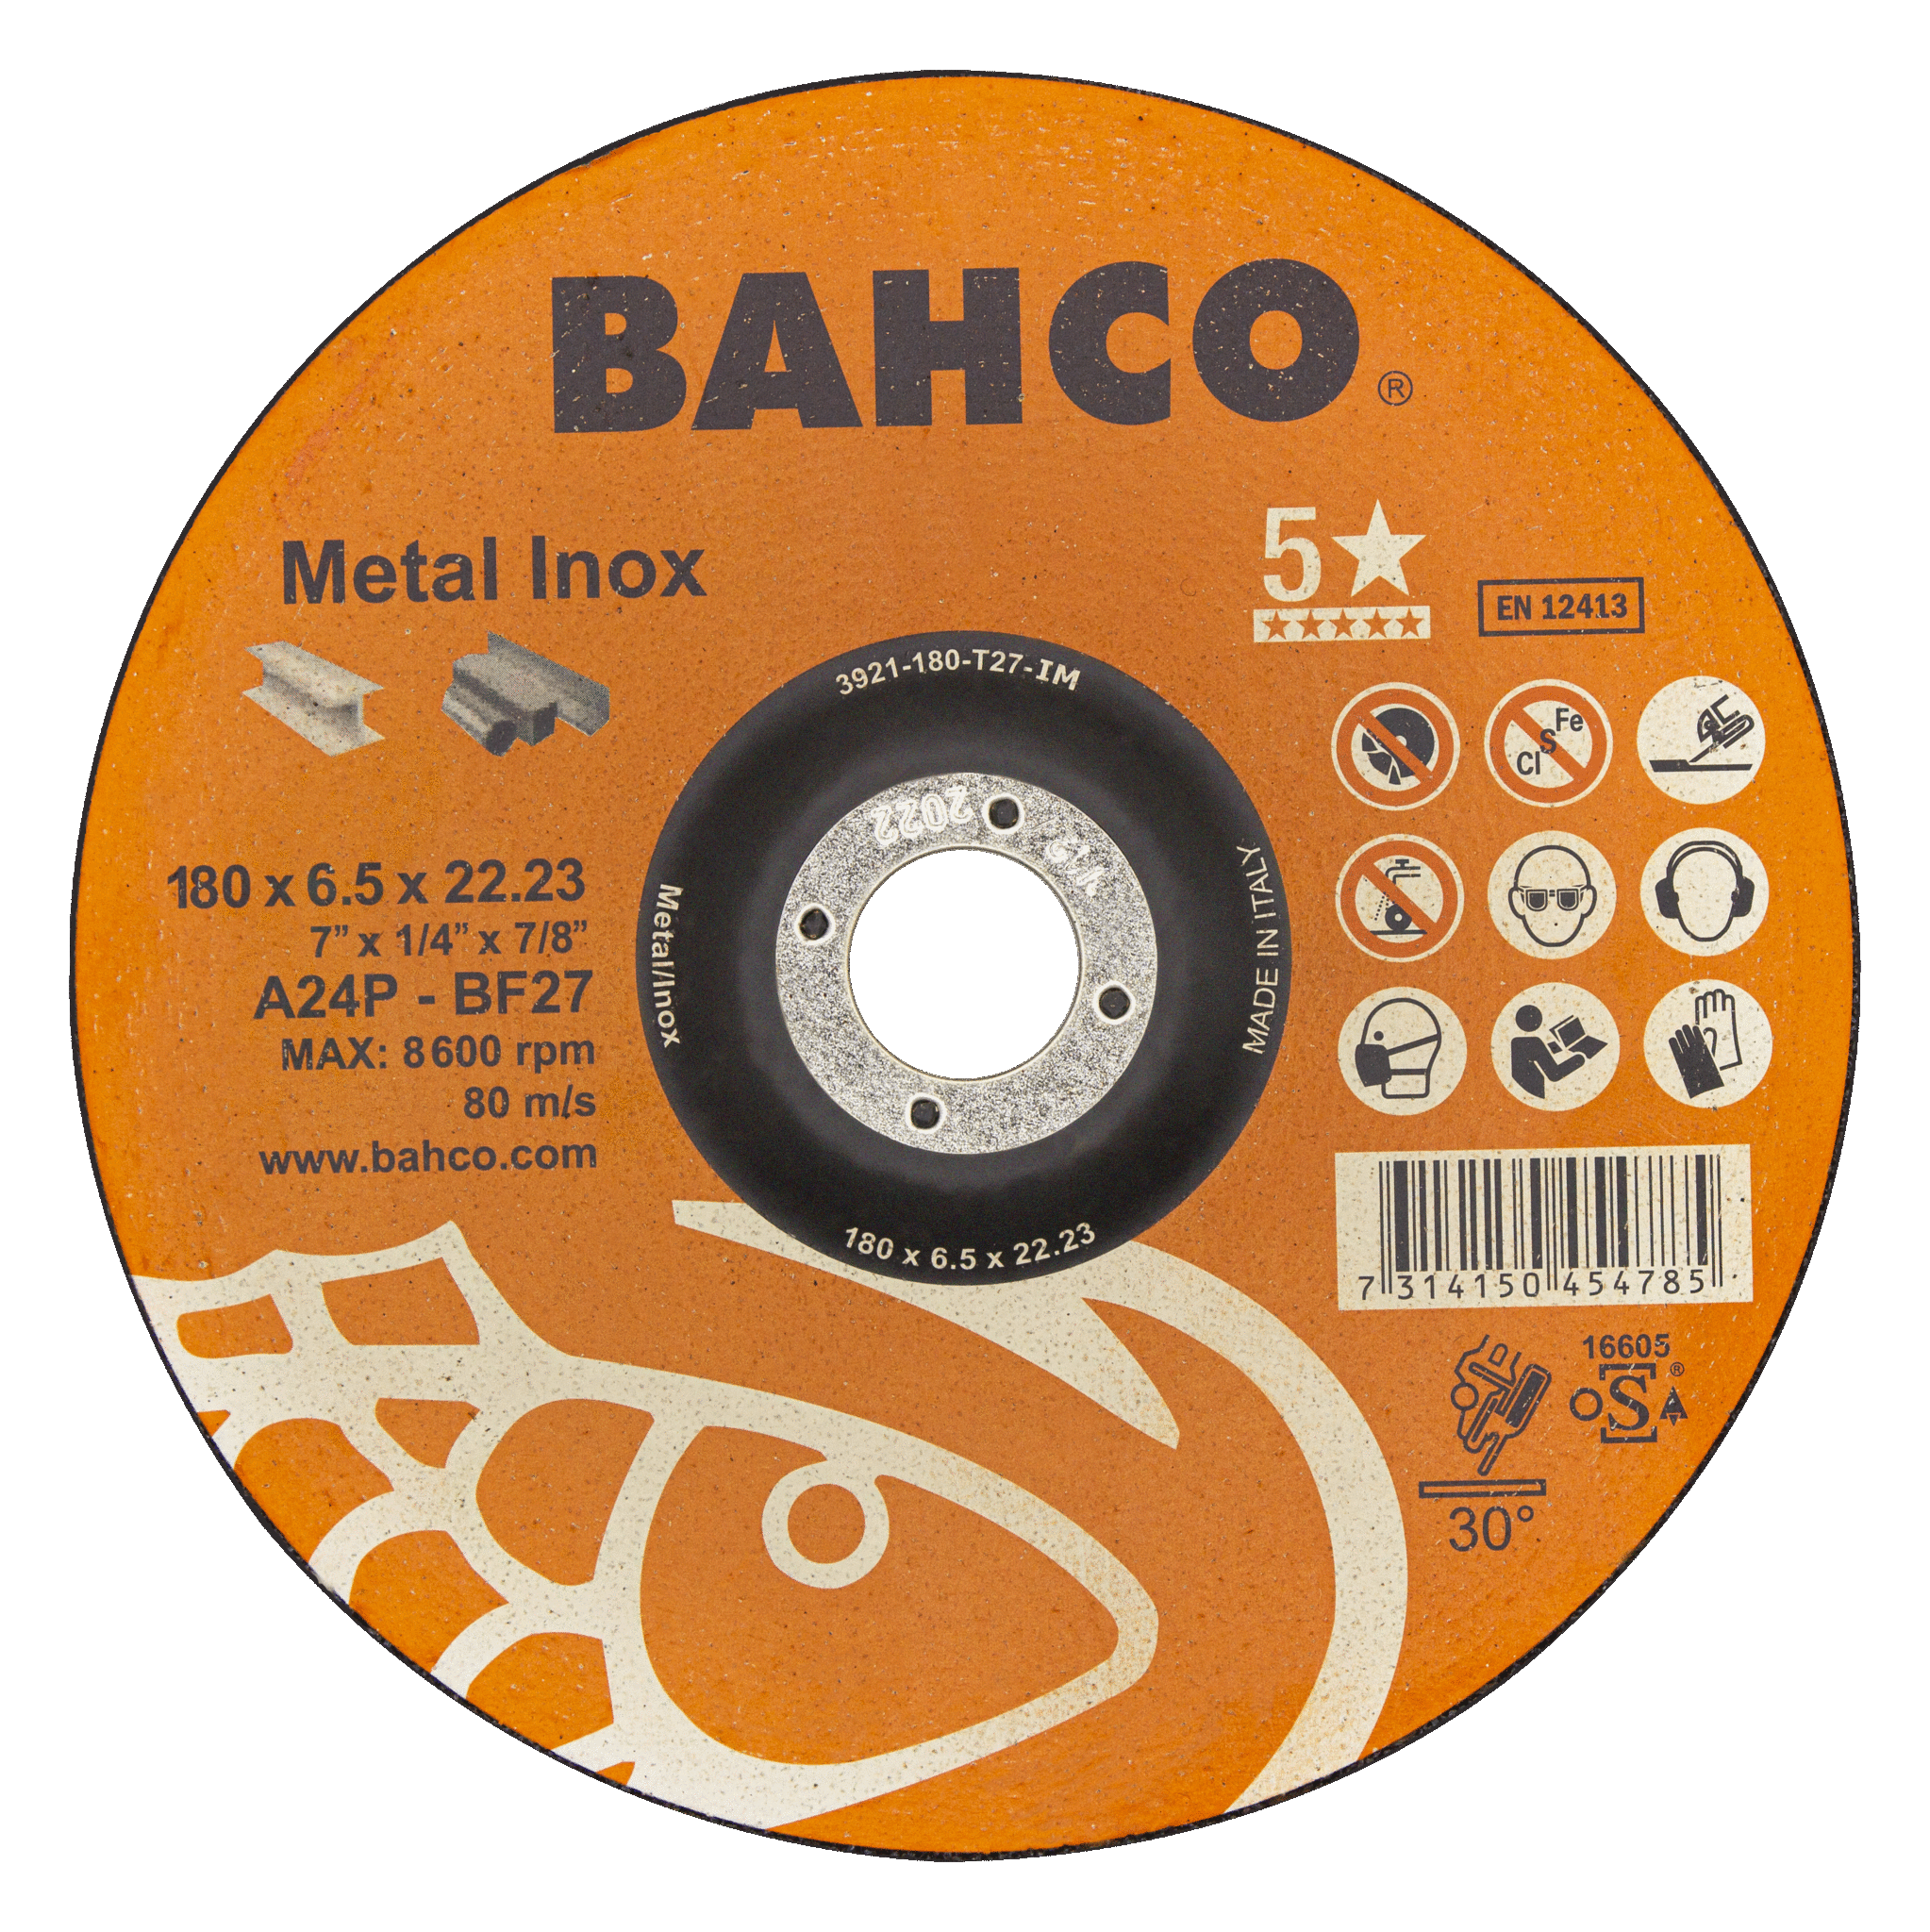 картинка Высокороизводительные диски для шлифования нержавеющей стали и металла 230 x 6.5 x 22.23mm BAHCO 3921-230-T27-IM от магазина "Элит-инструмент"